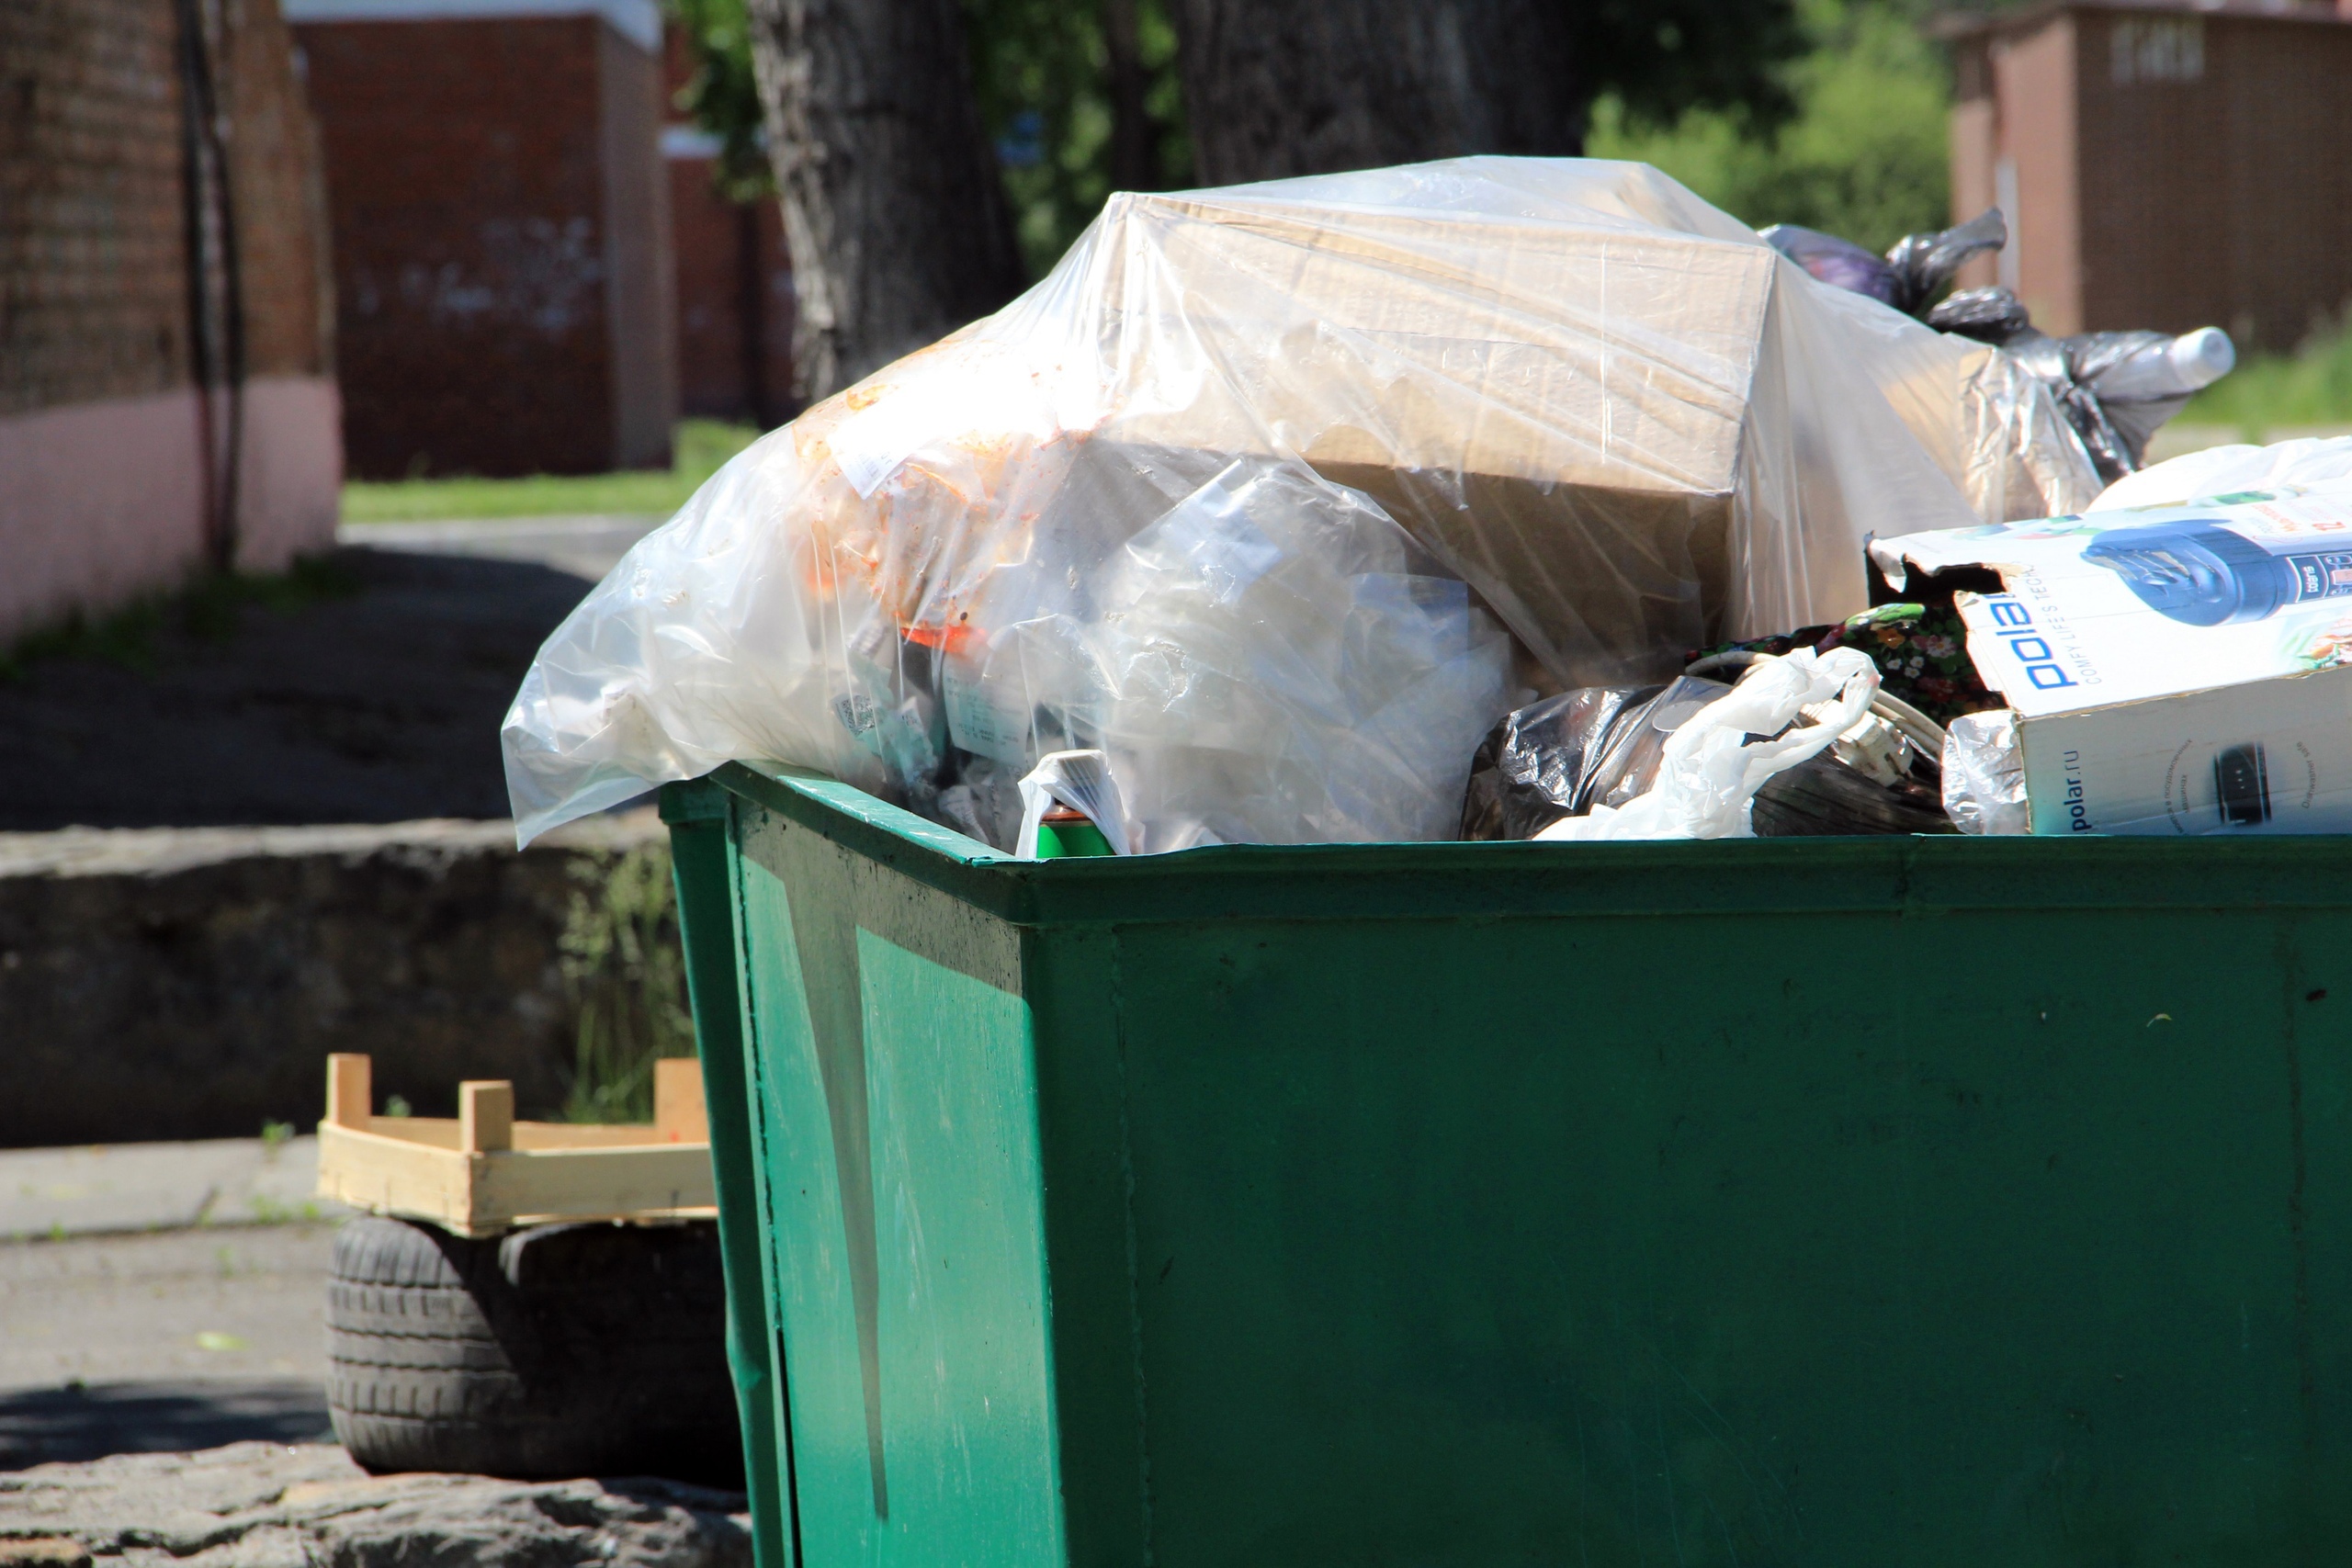 Марковское МО получит субсидию областного бюджета на покупку контейнеров и обустройство мусорных площадок